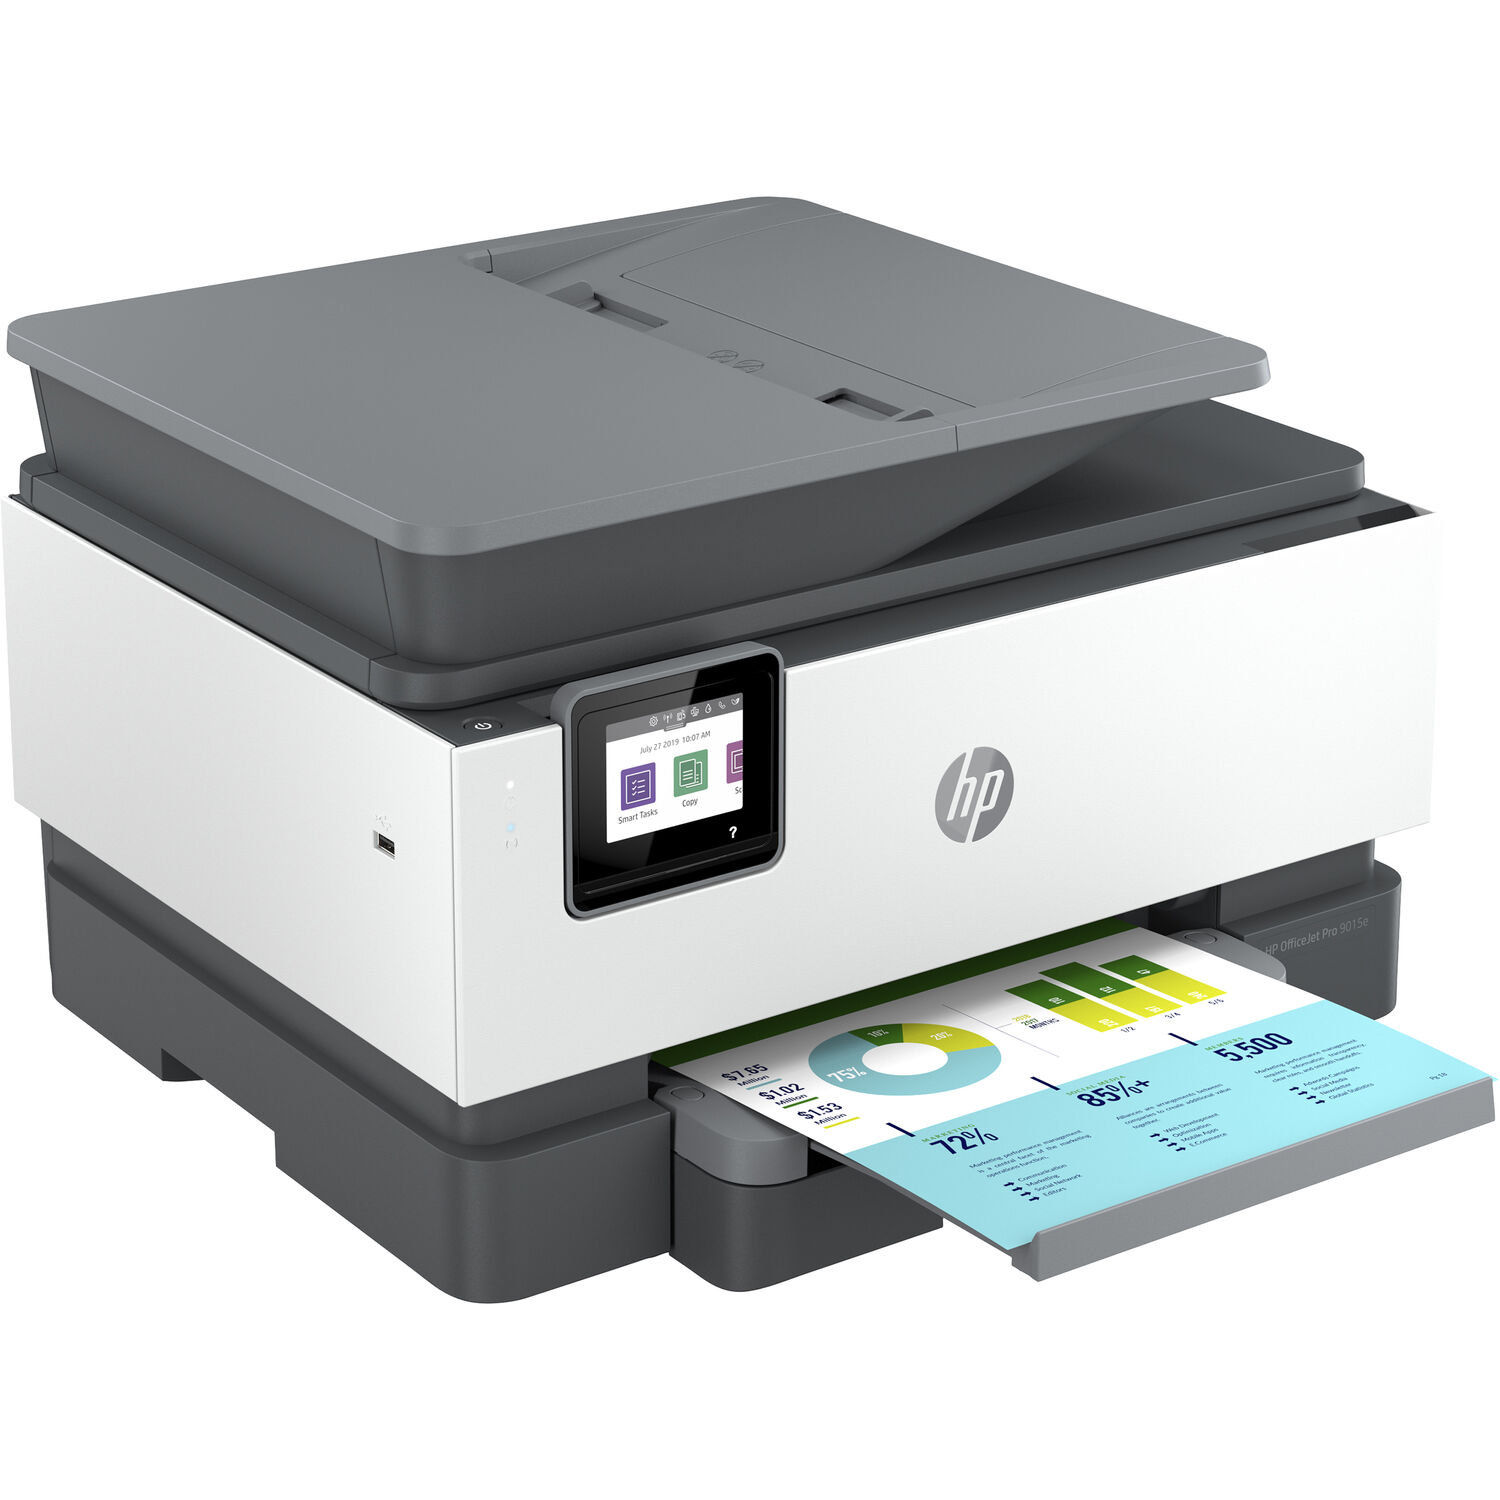 Impresora Multifuncional Hp Officejet Pro 9015E con 6 Meses de Tinta Gratis a Través de Hp+